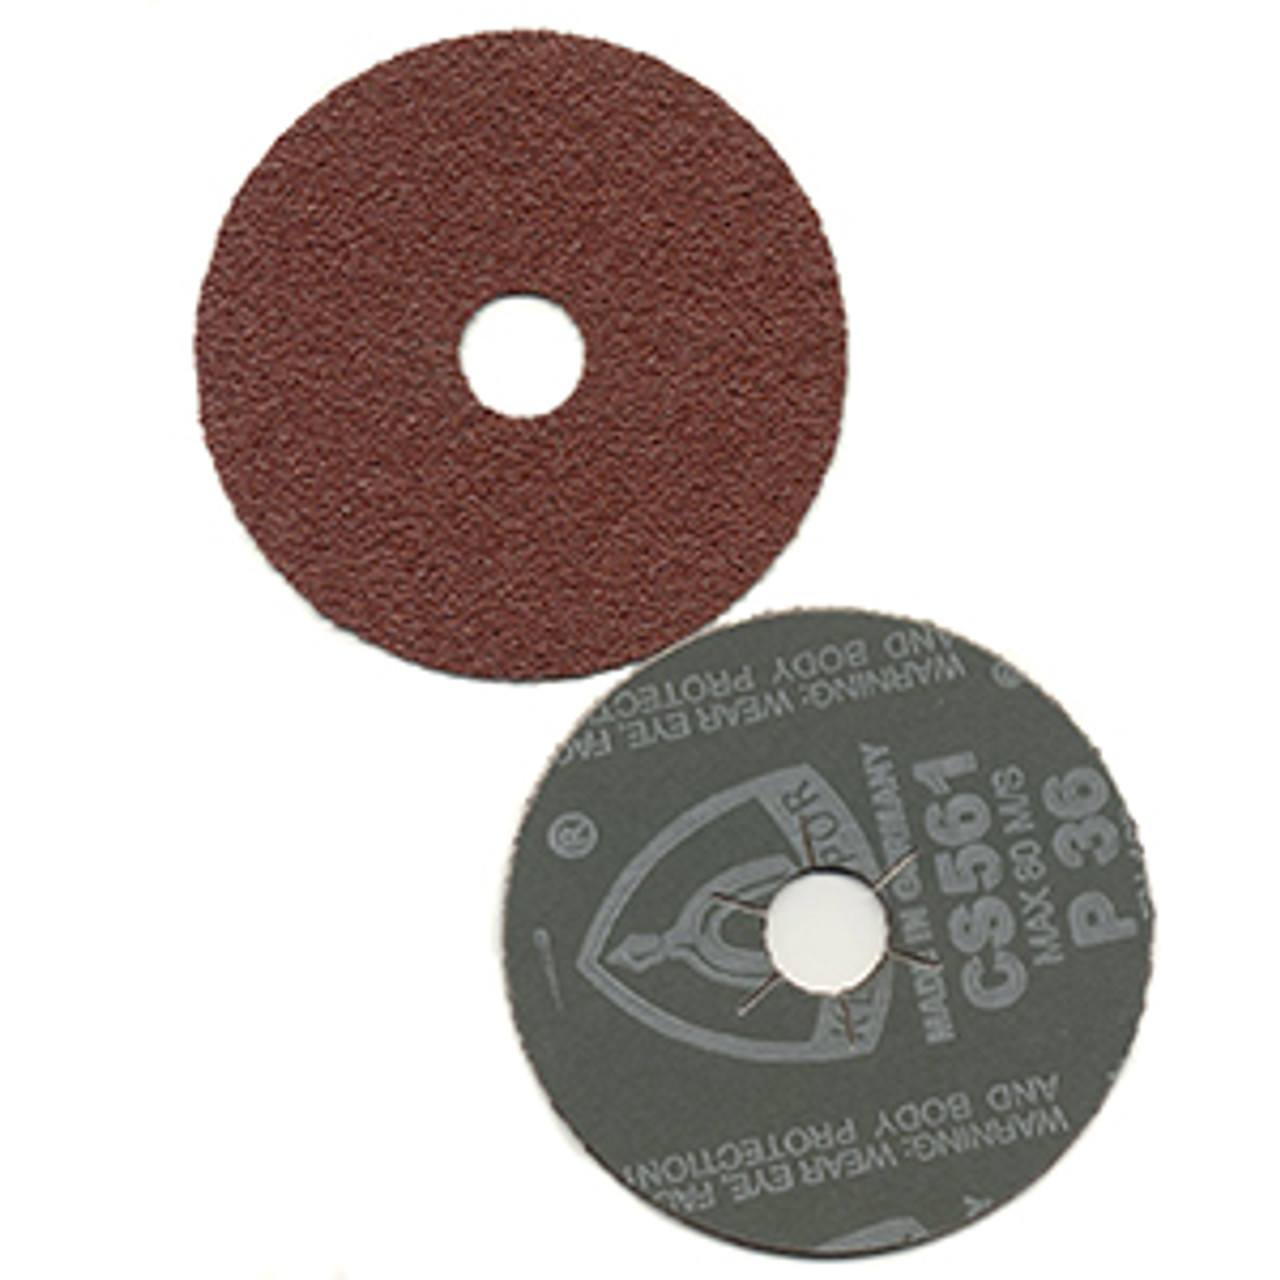 Klingspor Abrasives Aluminum Oxide CS561 Fibre Discs, 50 Grit, 4-1/2"x 7/8" Center Hole, 5pk